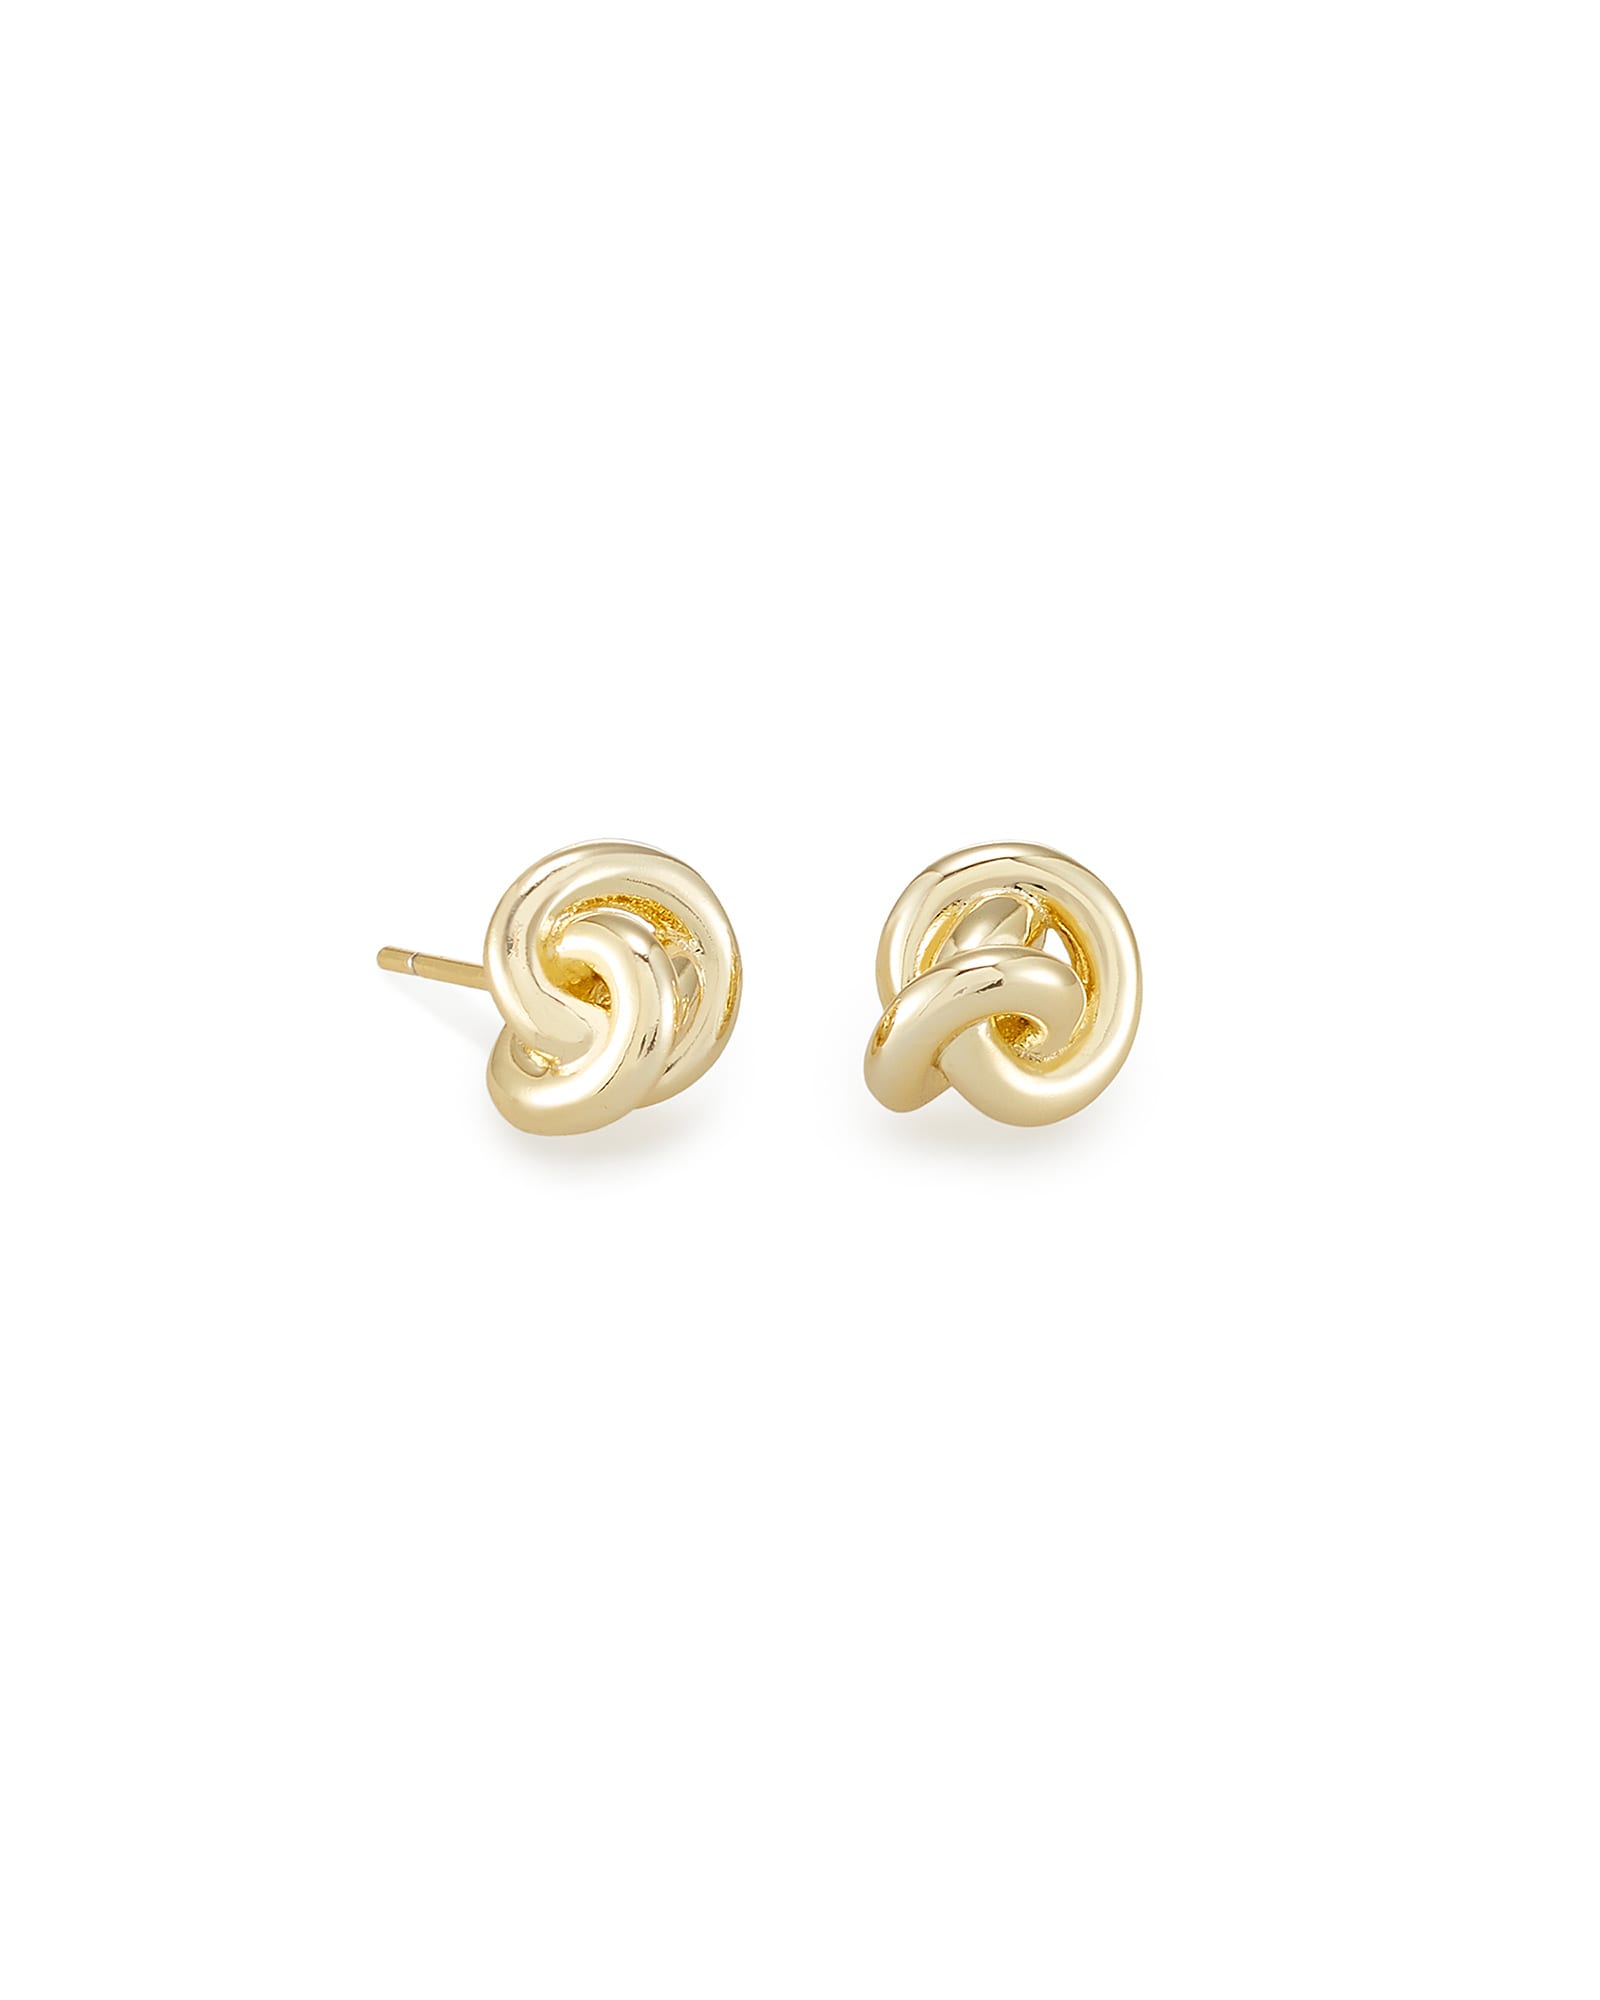 Presleigh Love Knot Stud Earrings in Gold | Kendra Scott